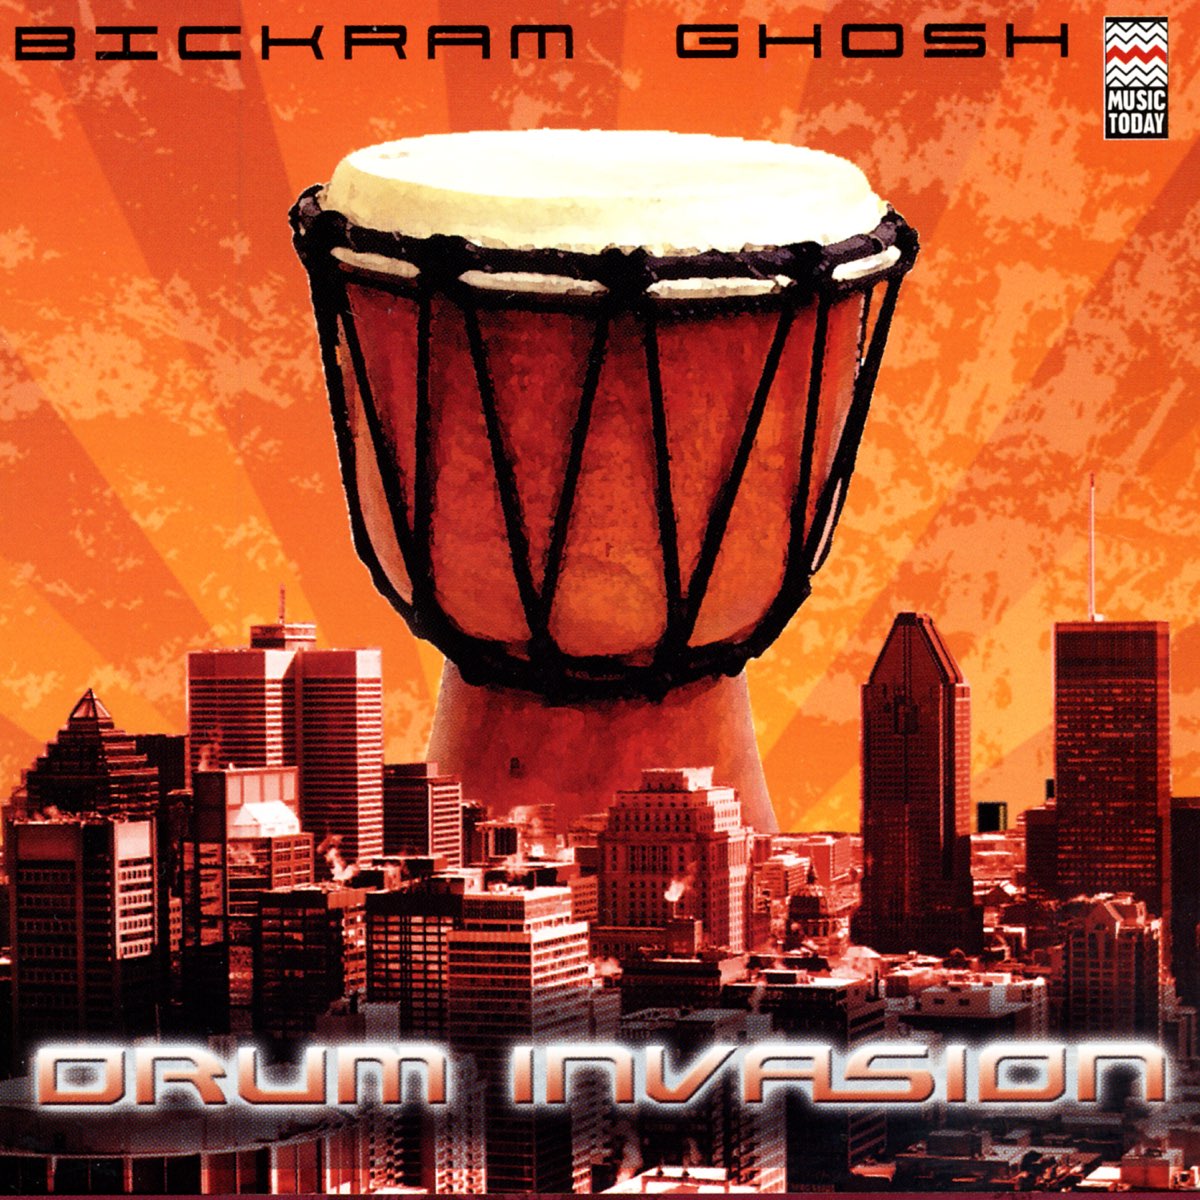 Drum Invasion by Bikram Ghosh on Apple Music